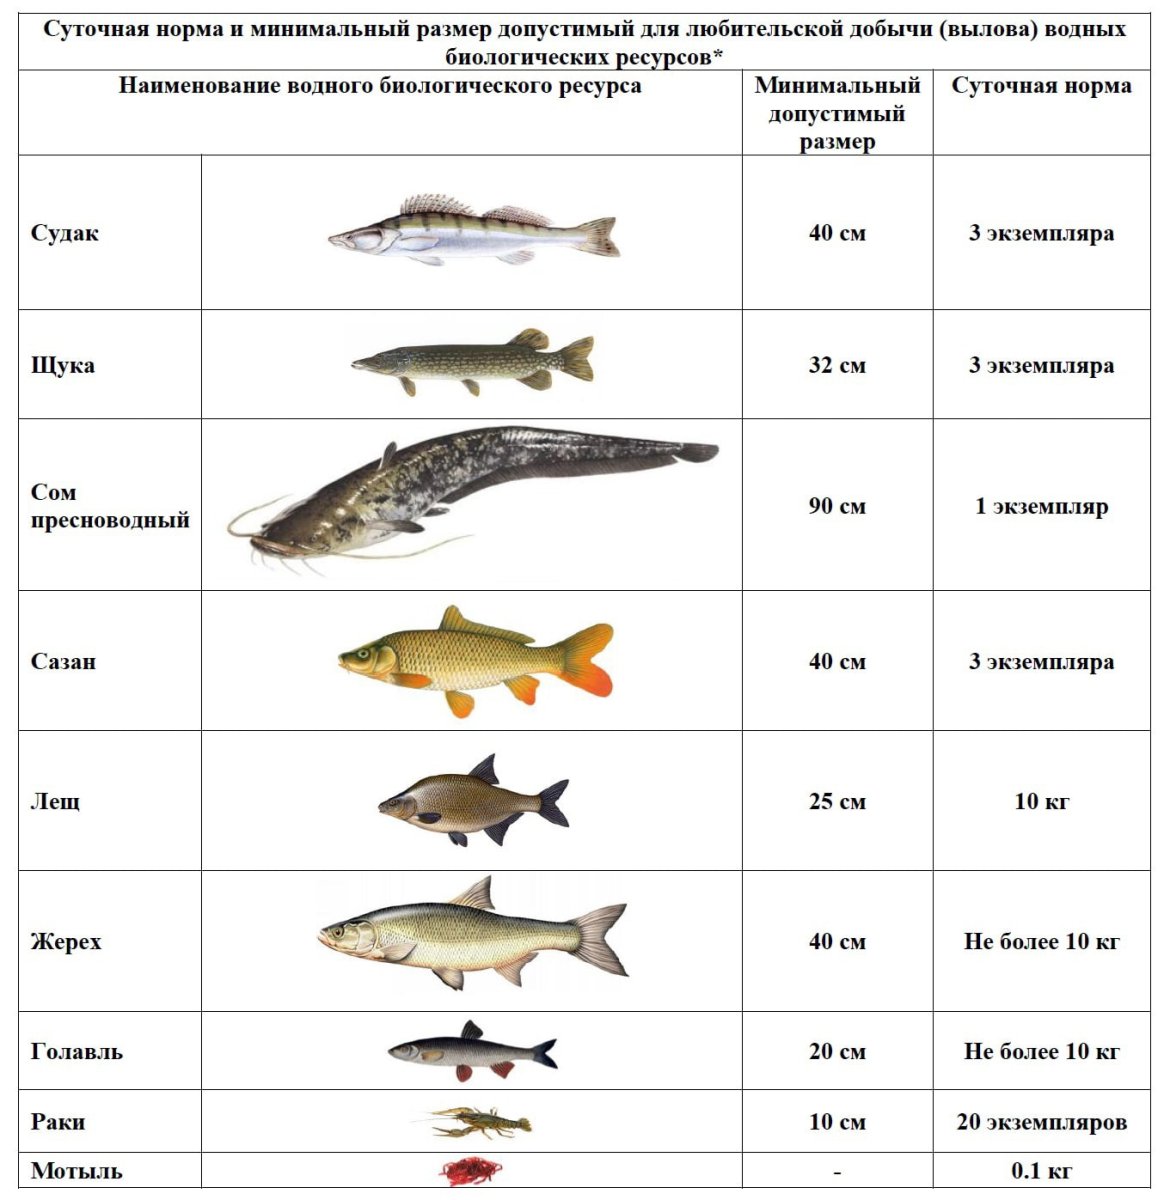 Размеры рыб на озере. Разрешенный размер судака. Таблица размеров допустимый пойманной рыбы. Разрешённый размер рыбы для вылова в Московской области 2021. Размер судака разрешенный к вылову.